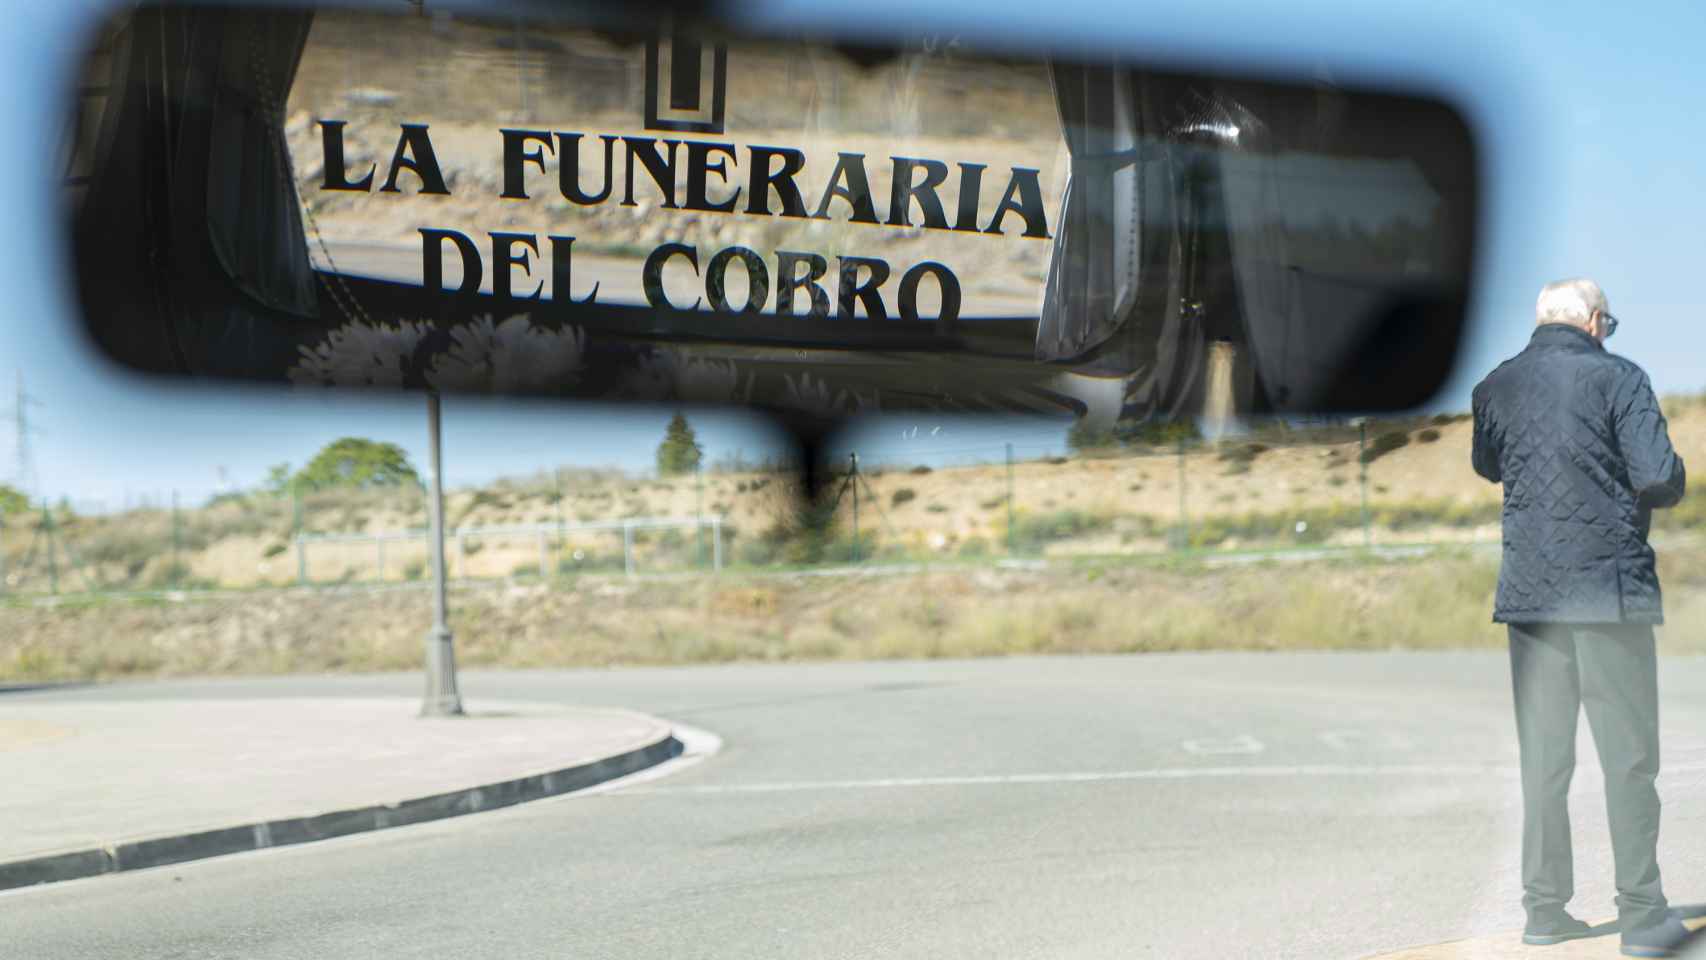 El coche fúnebre está rotulado con cruces y el nombre de la empresa por todas partes.